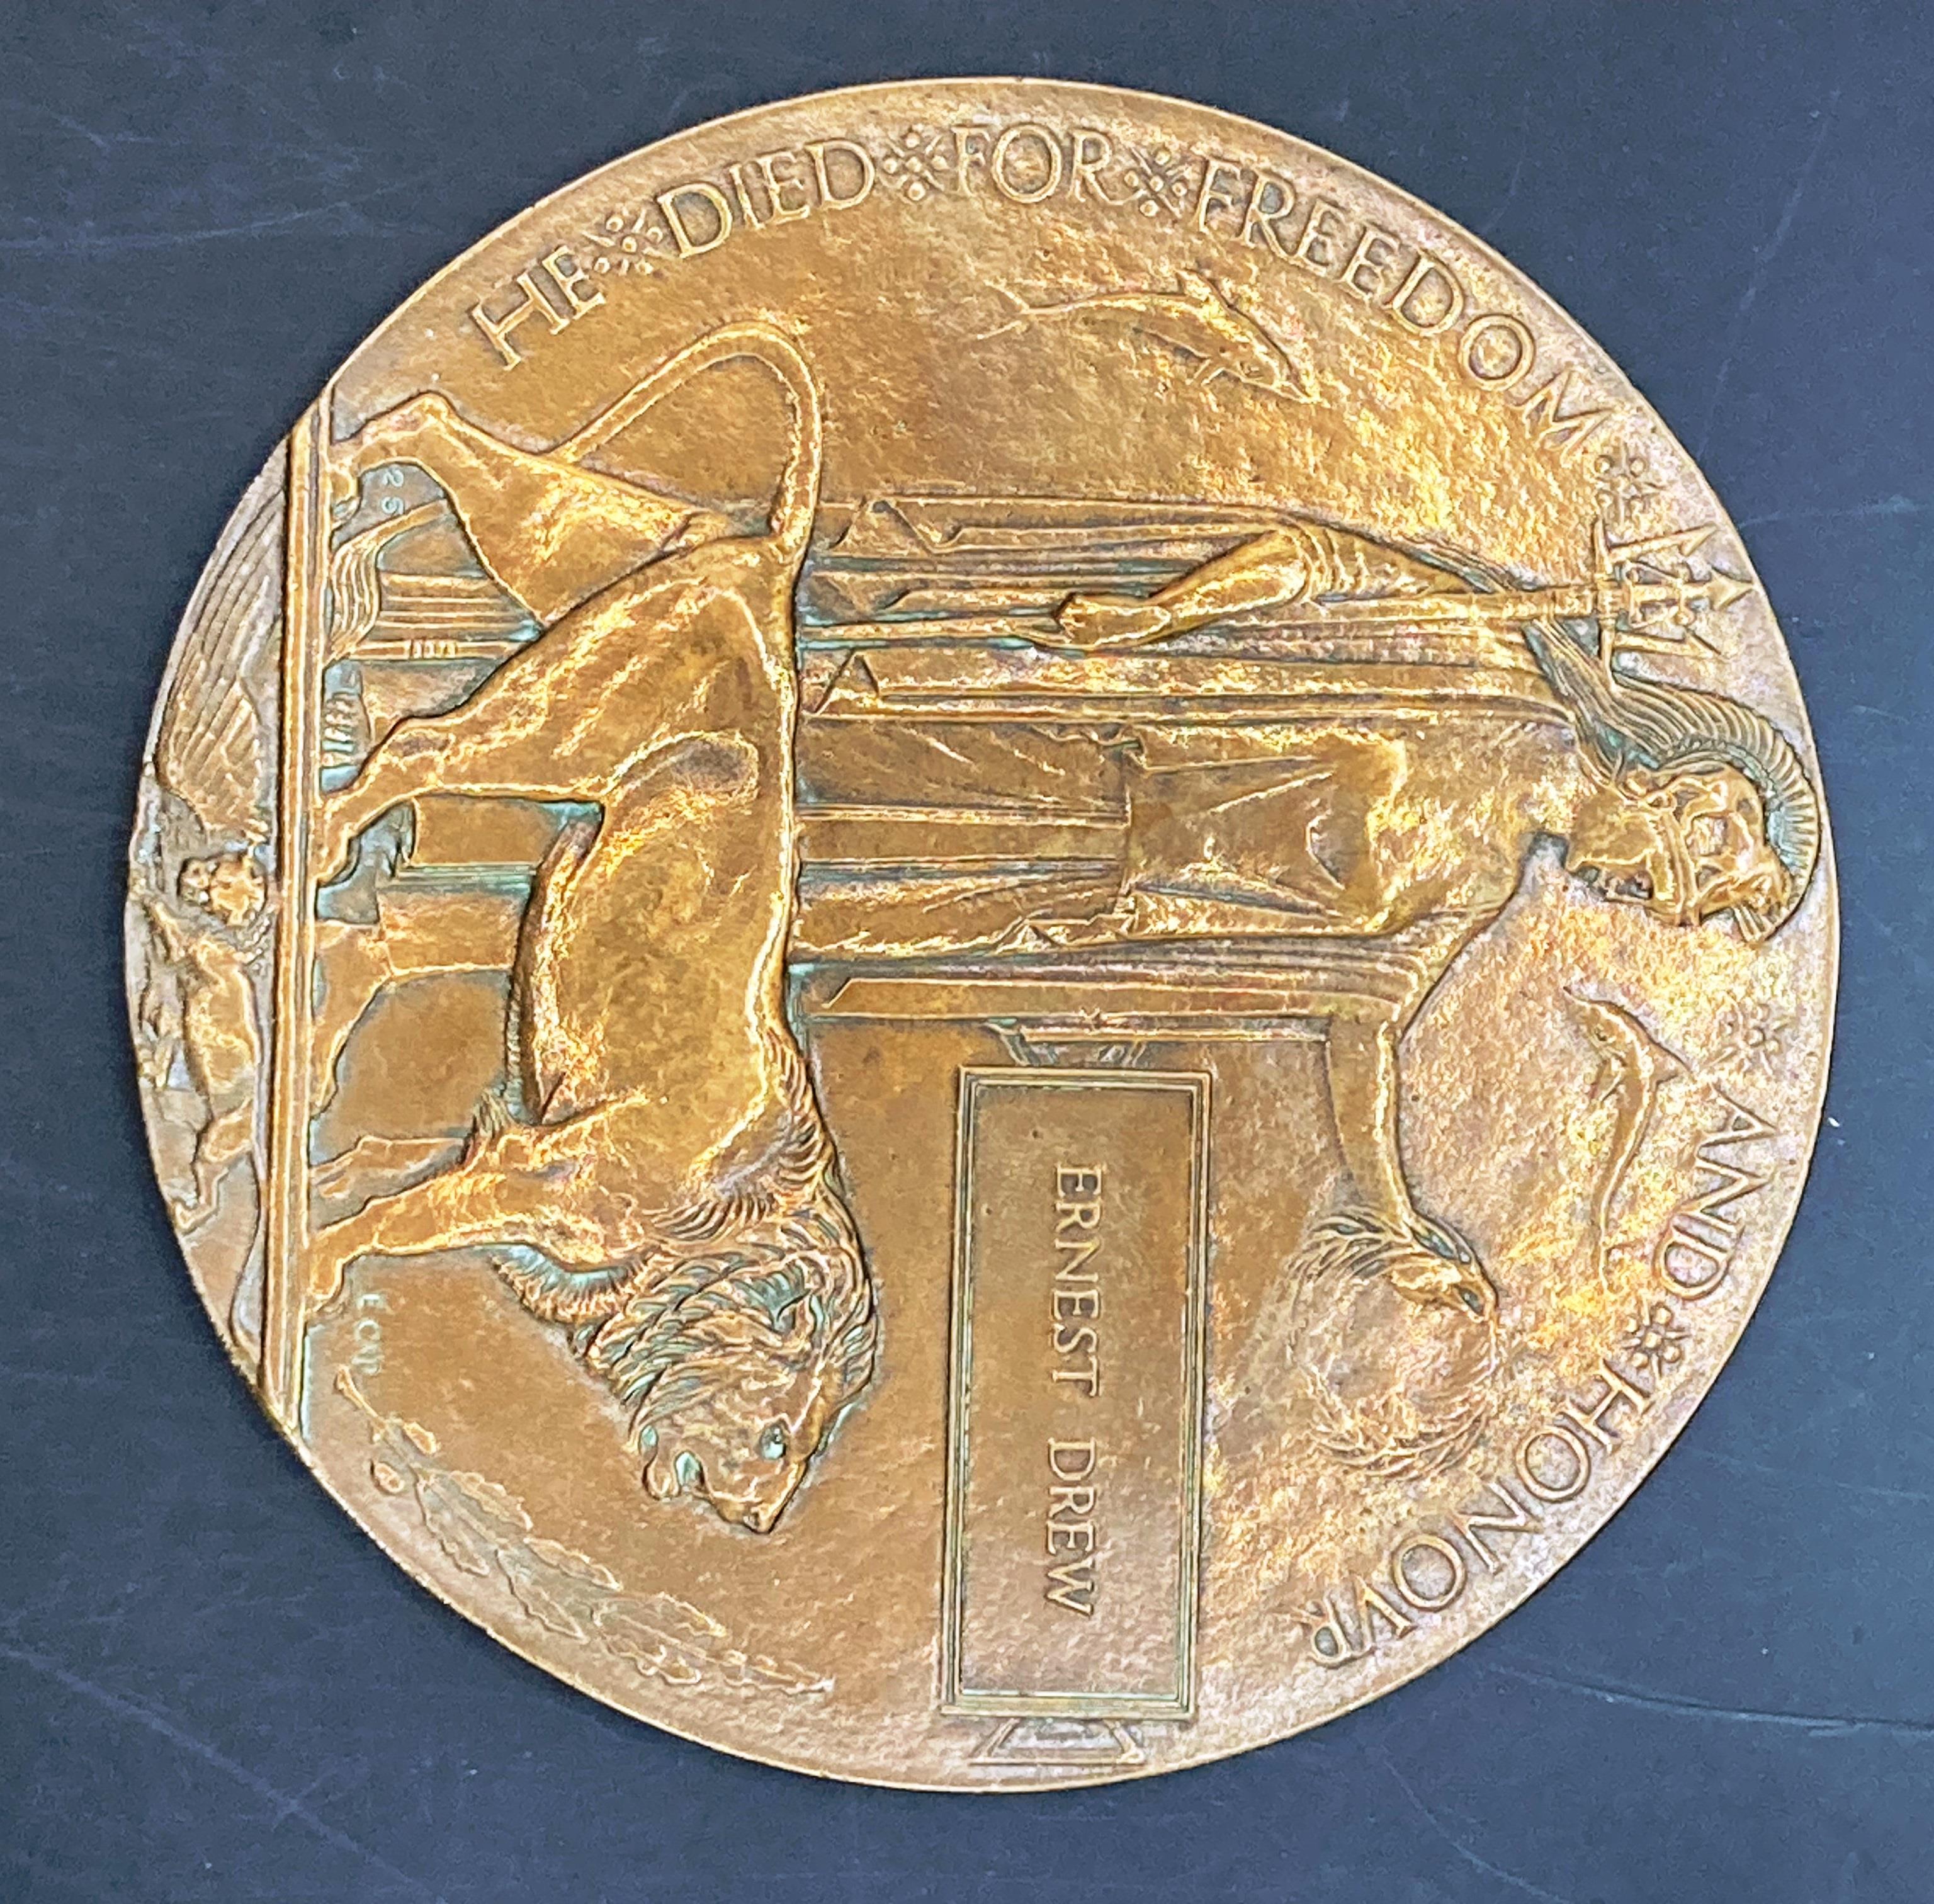 Ernest Drew World War I bronze memorial plaque 12cm diameter (Saleroom location: S3 GC4)